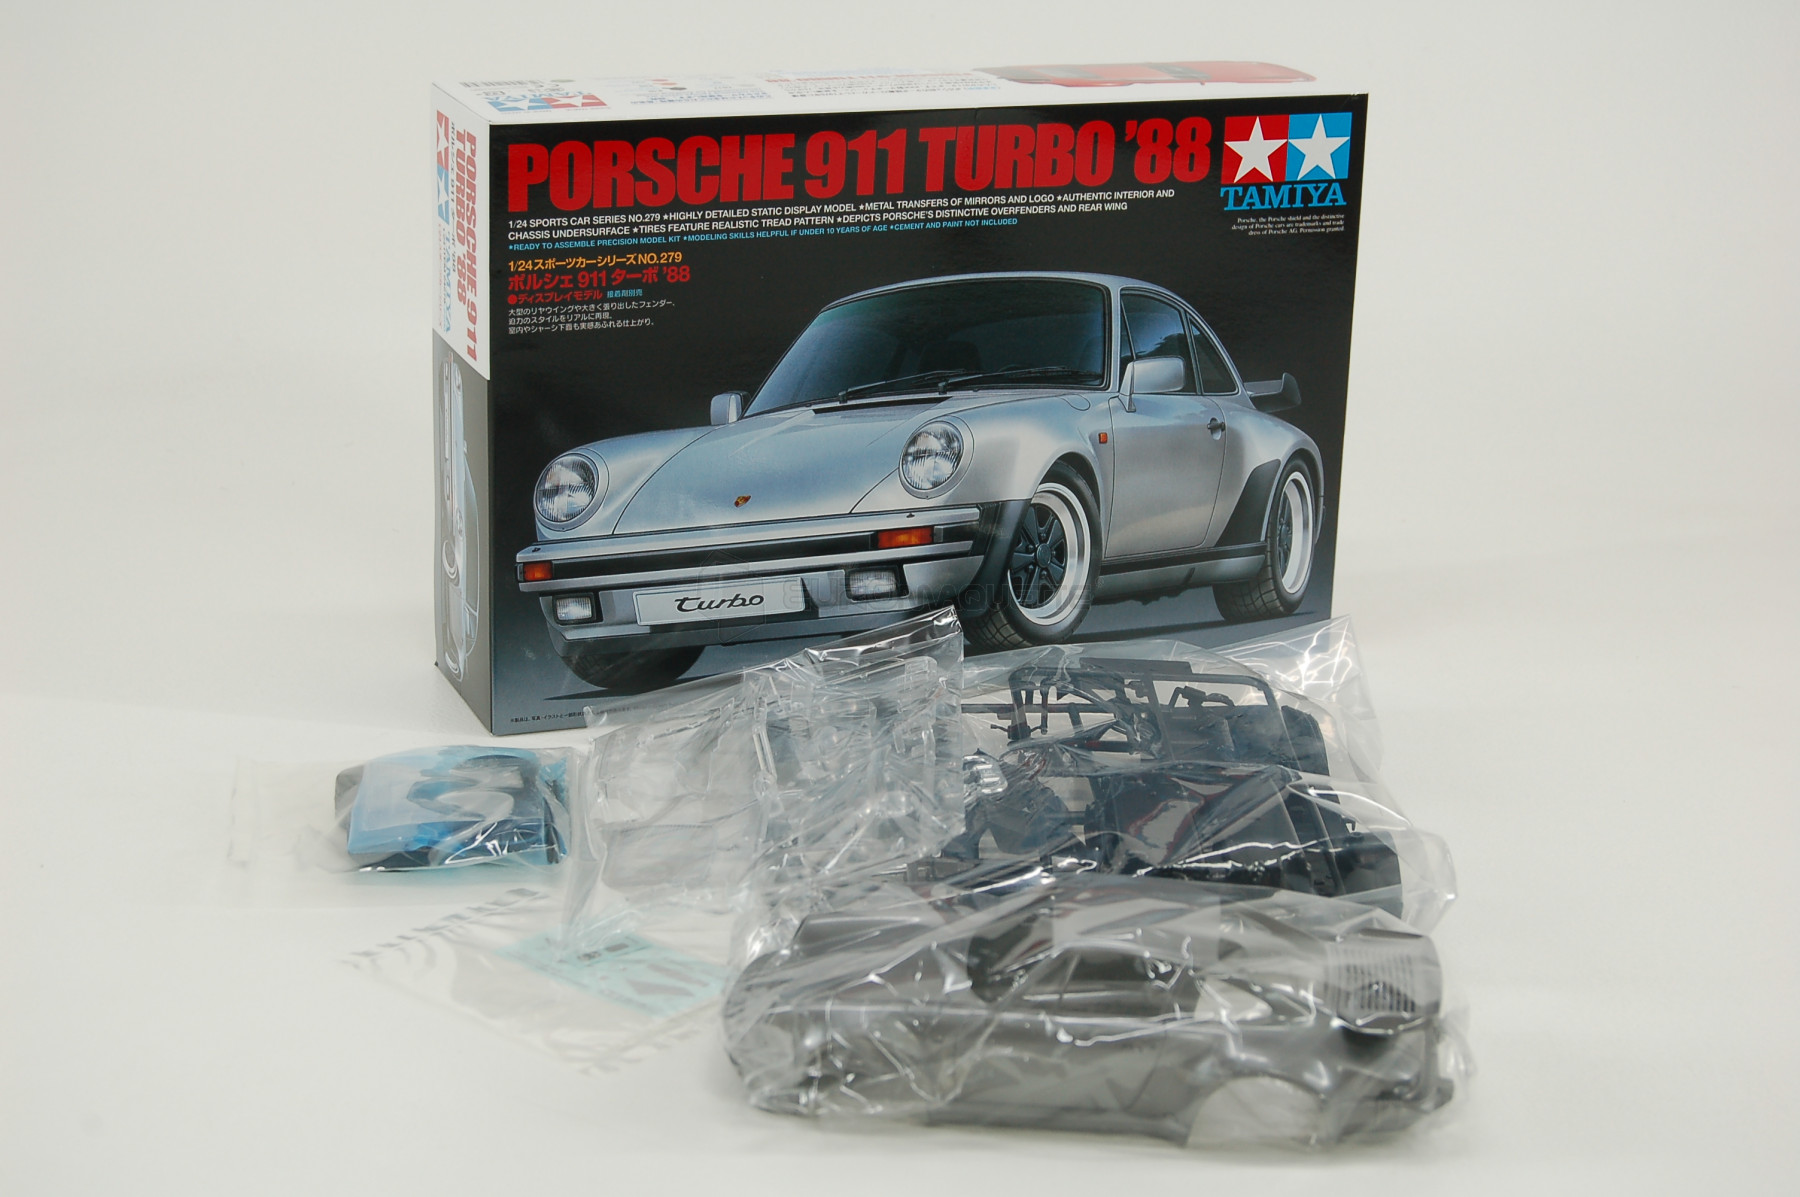 Maquette GENERIQUE Porsche 911 Turbo 88